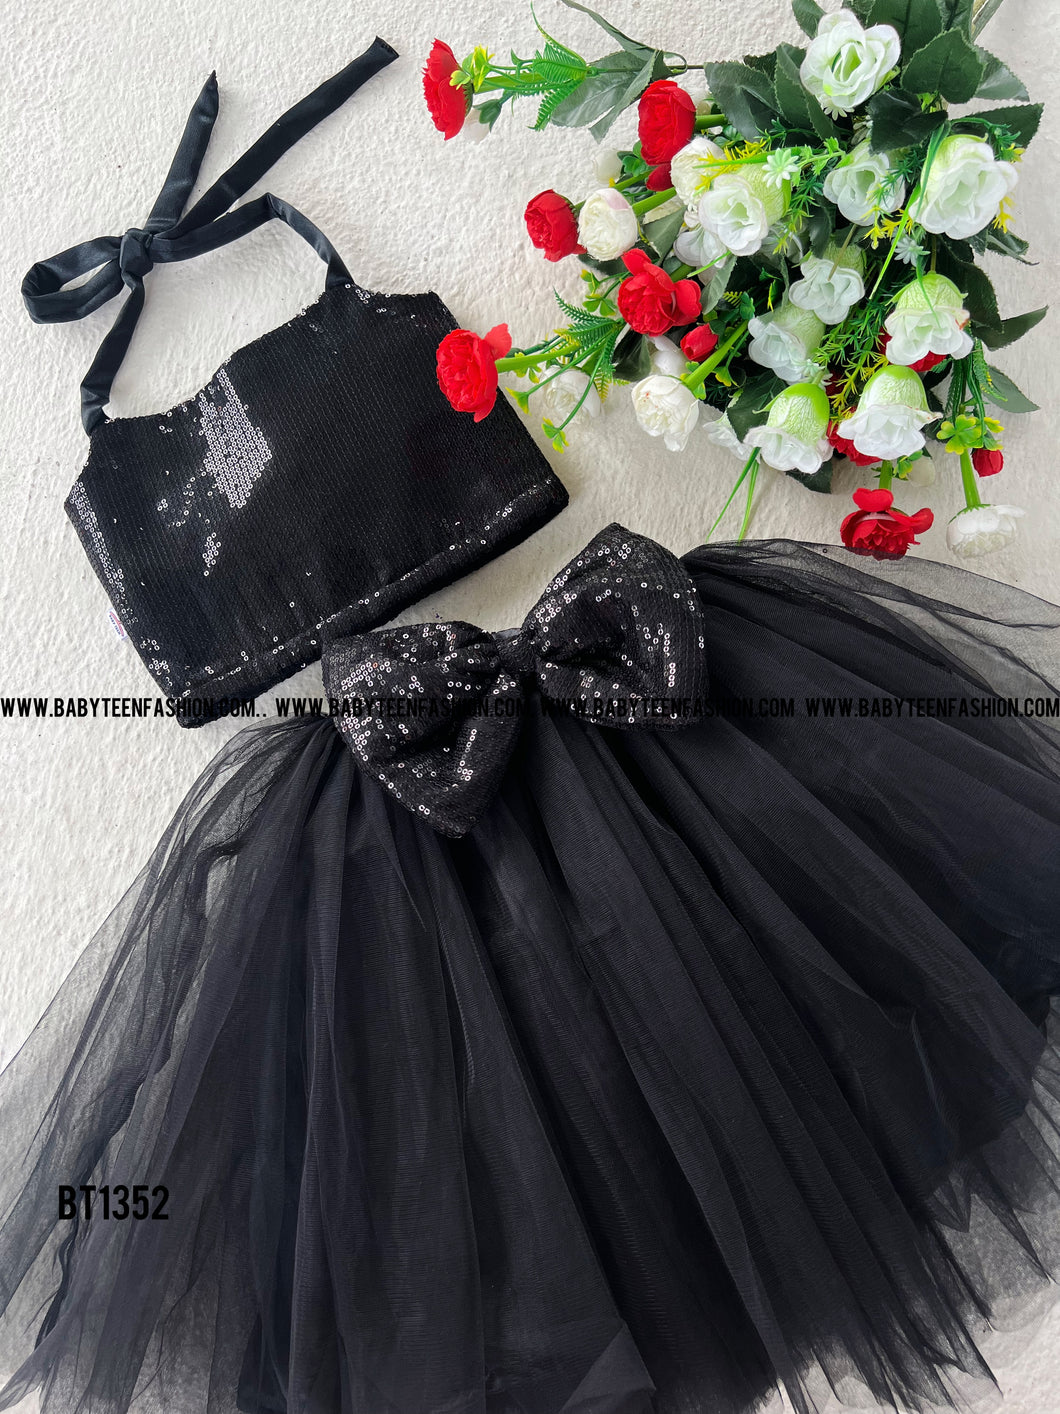 BT1352 Sequins Yoke Black Crop Top and Skirt